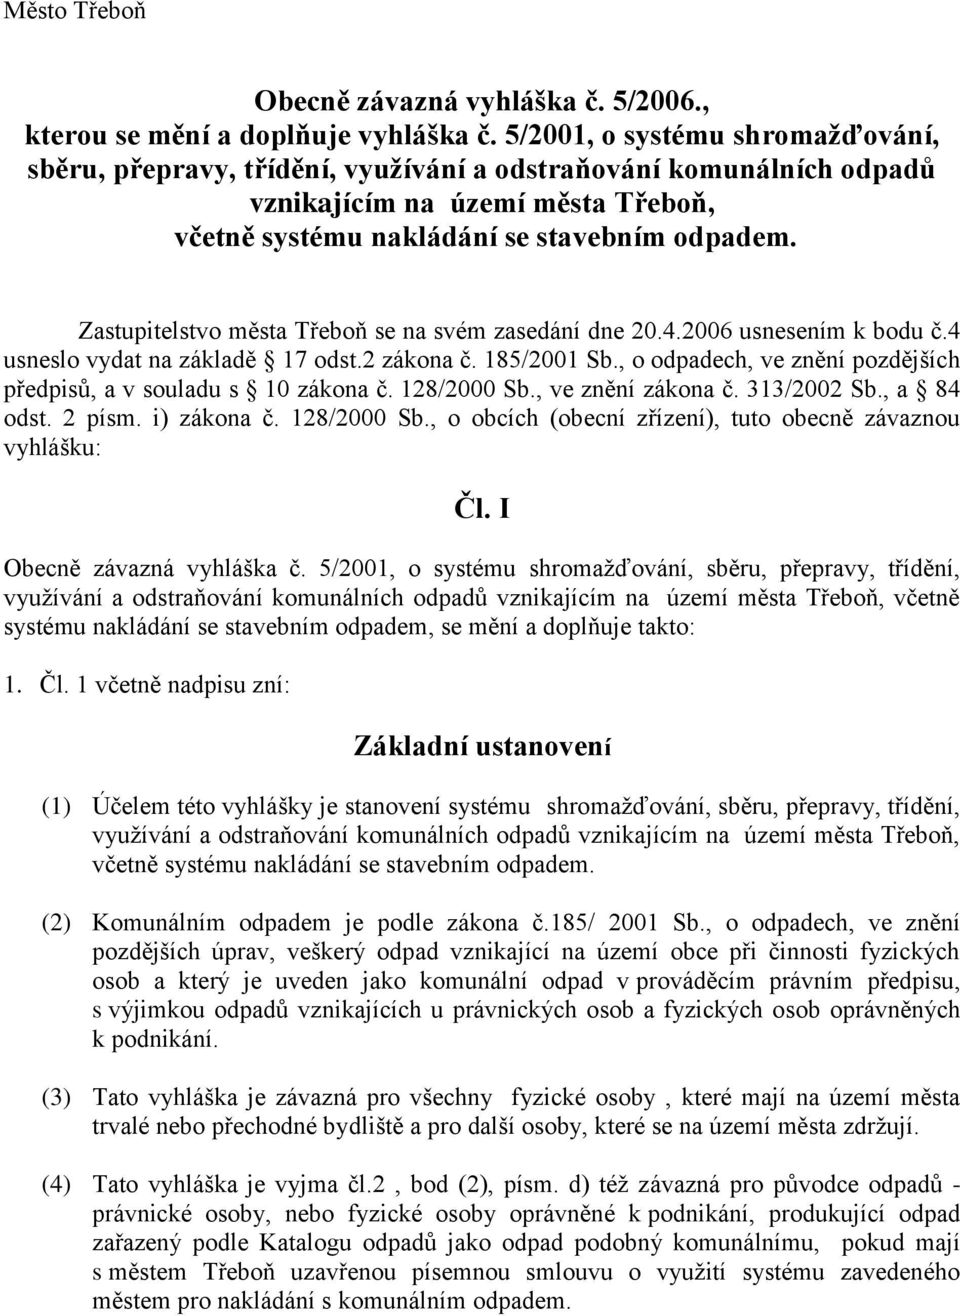 Zastupitelstvo města Třeboň se na svém zasedání dne 20.4.2006 usnesením k bodu č.4 usneslo vydat na základě 17 odst.2 zákona č. 185/2001 Sb.